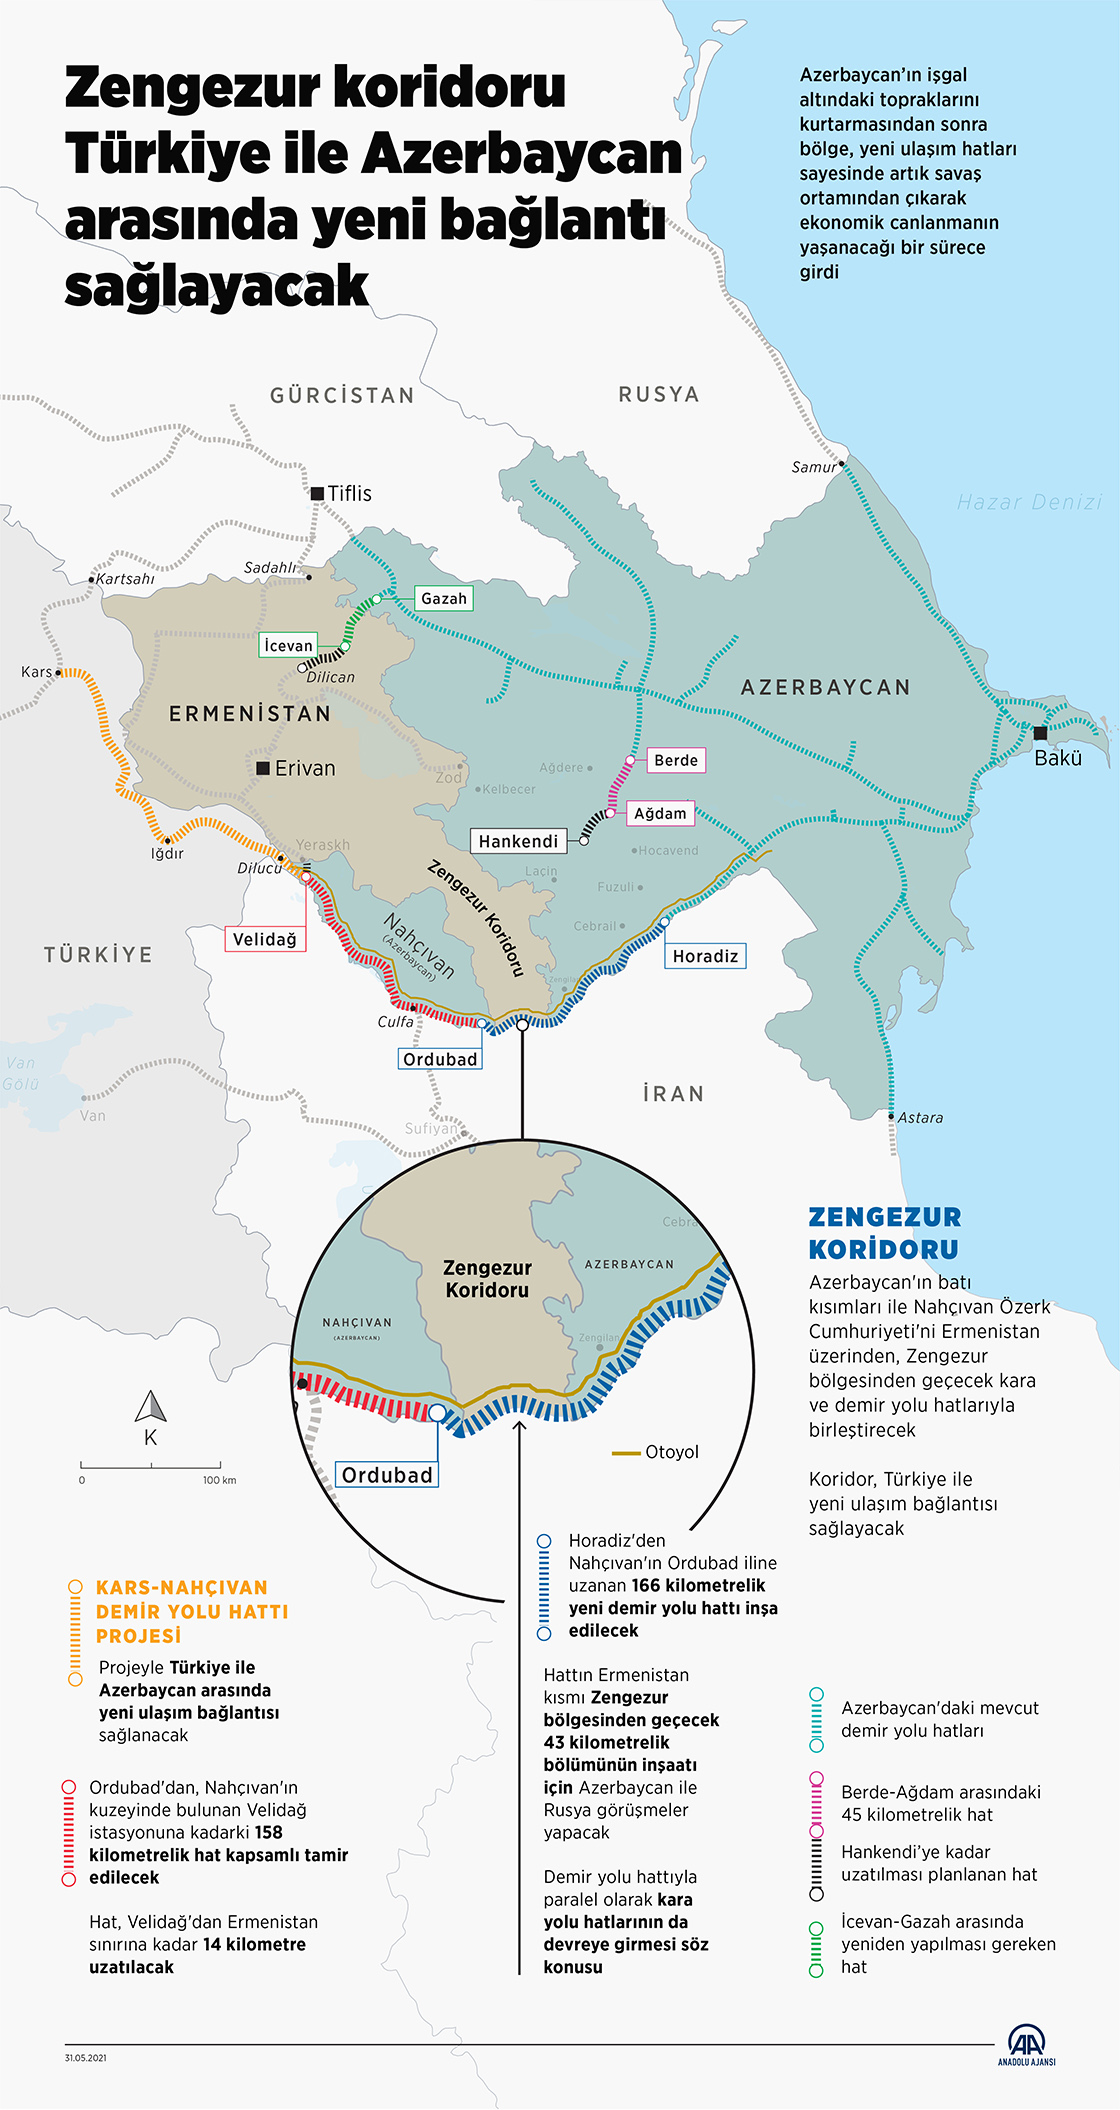 Zengezur koridoru Türkiye ile Azerbaycan arasında yeni bağlantı sağlayacak